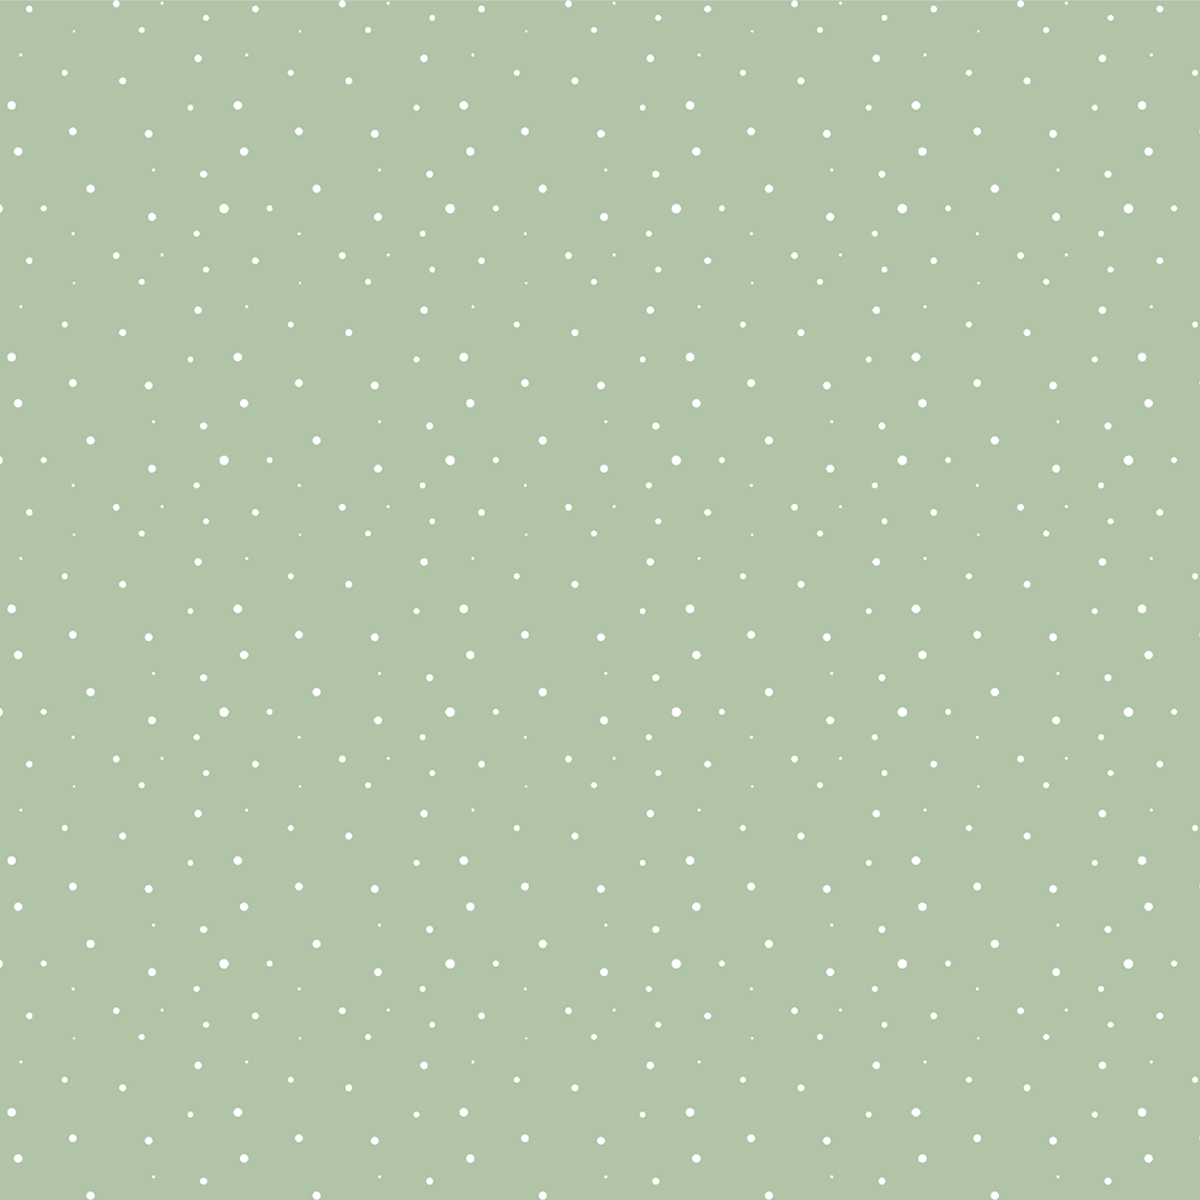 Polka Dot Design Wallpaper for Kids Room